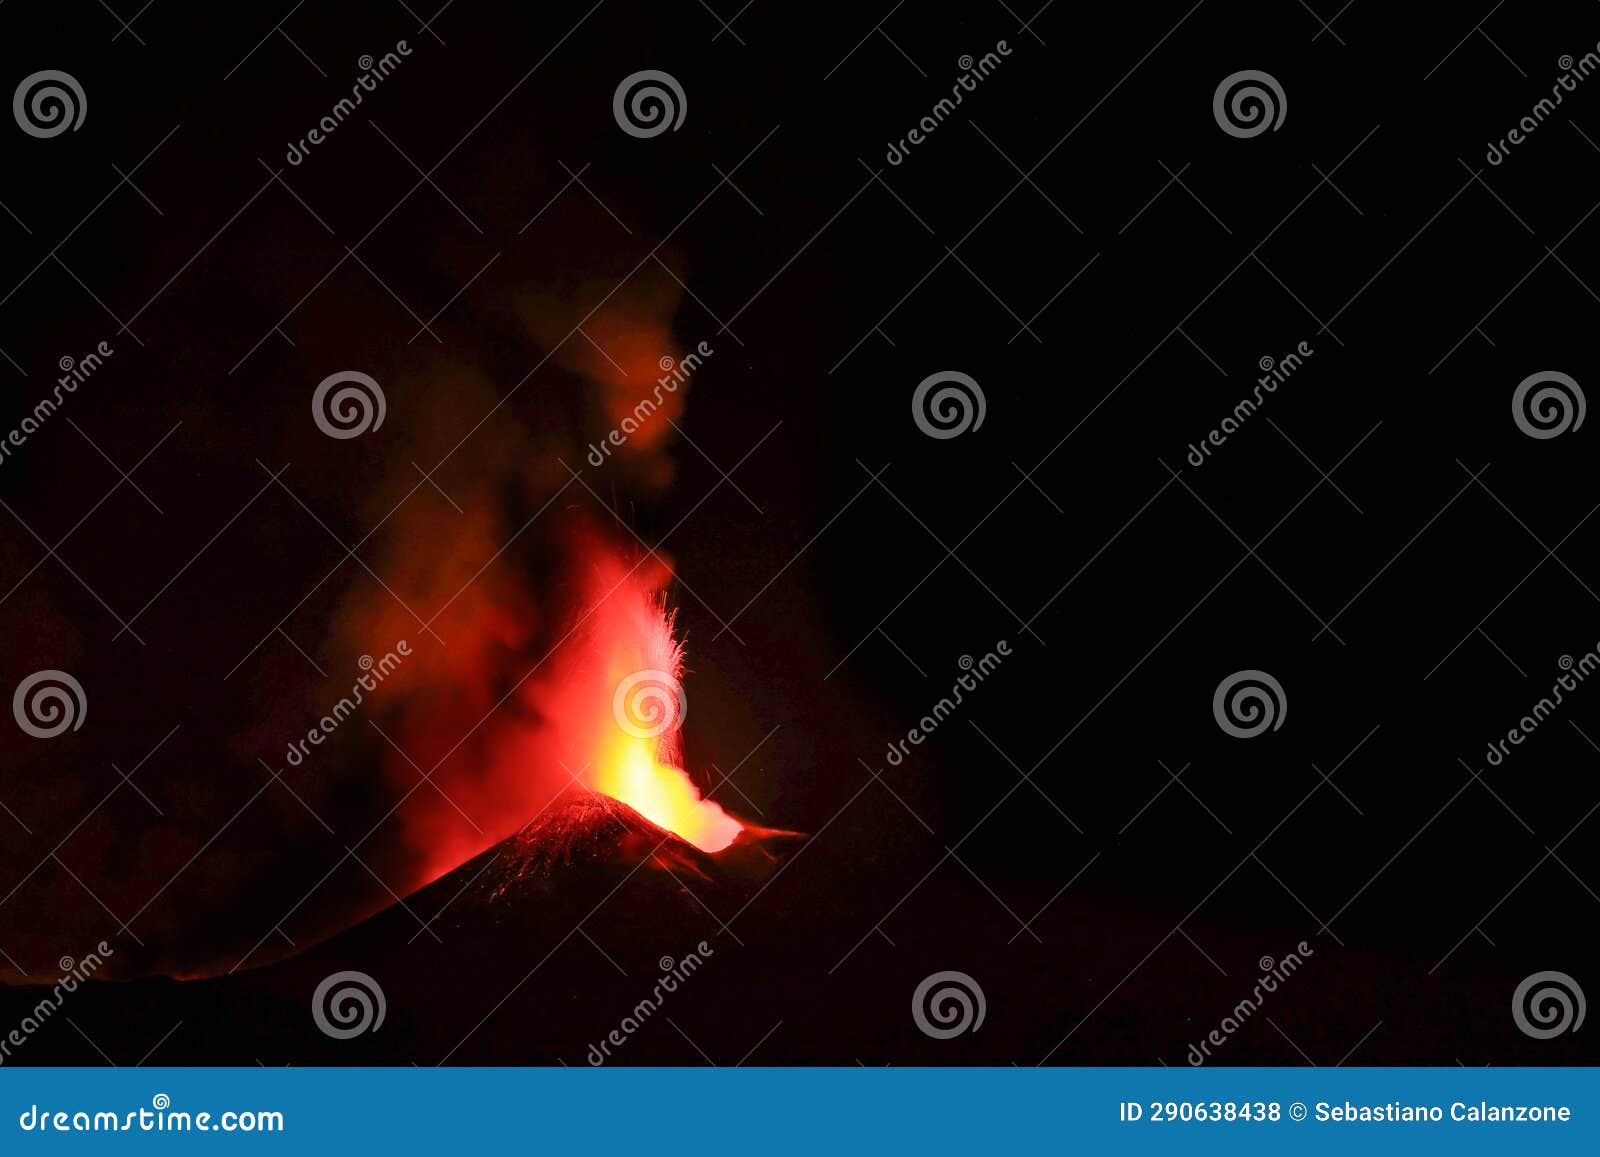 vulcano etna durante un eruzione con esplosione di lava dal cratere